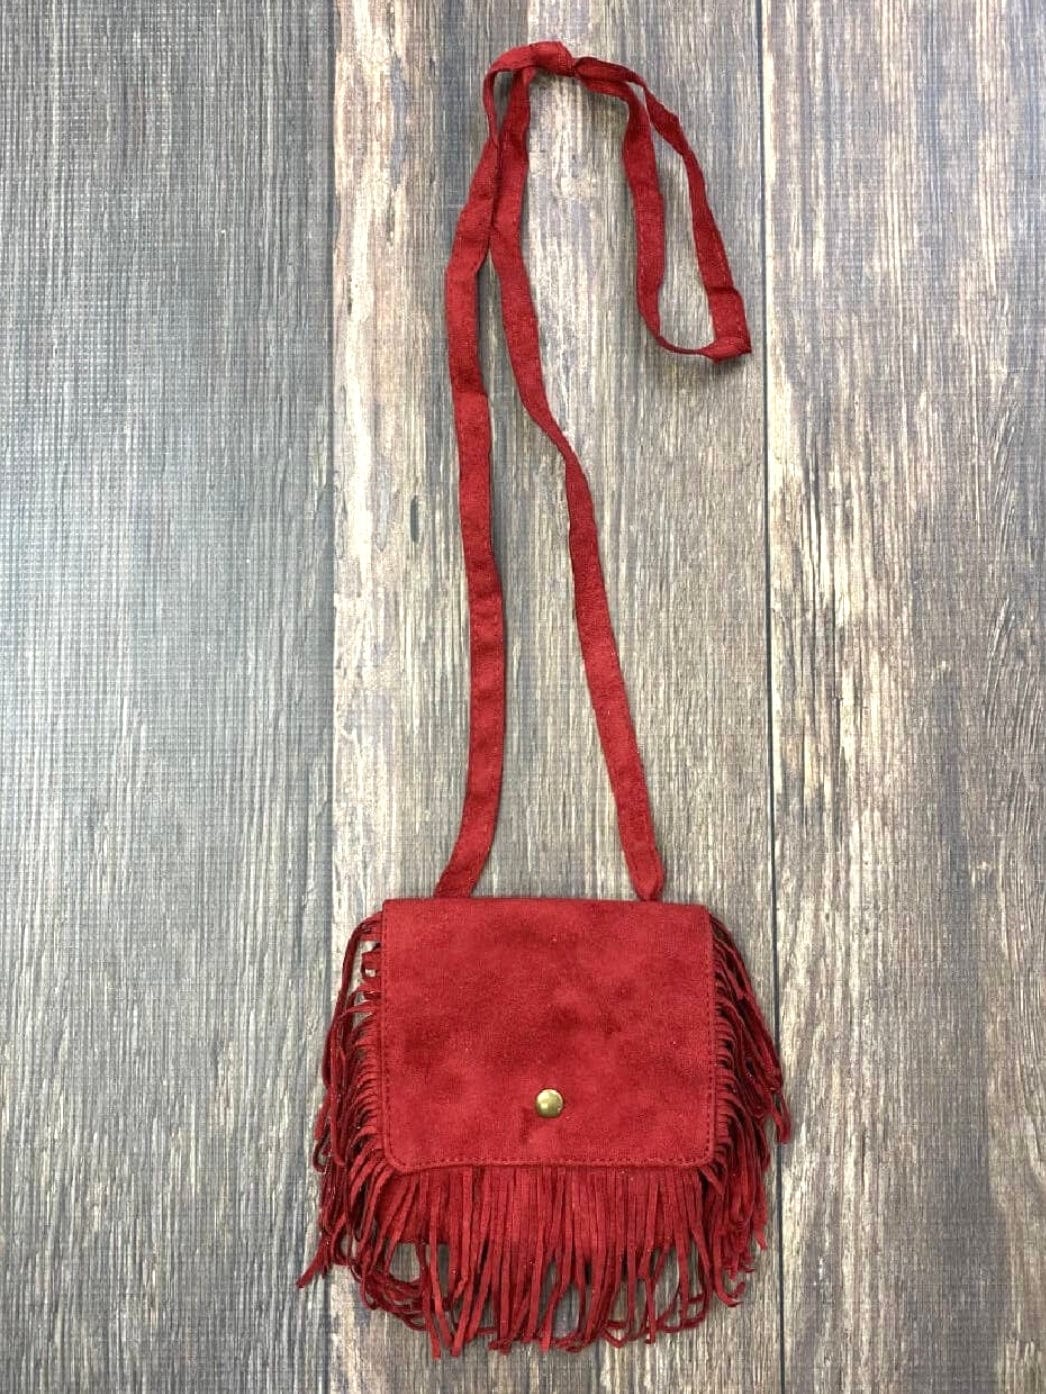 Fashionably, BBK! Red Boho Mini Crossbody Bag